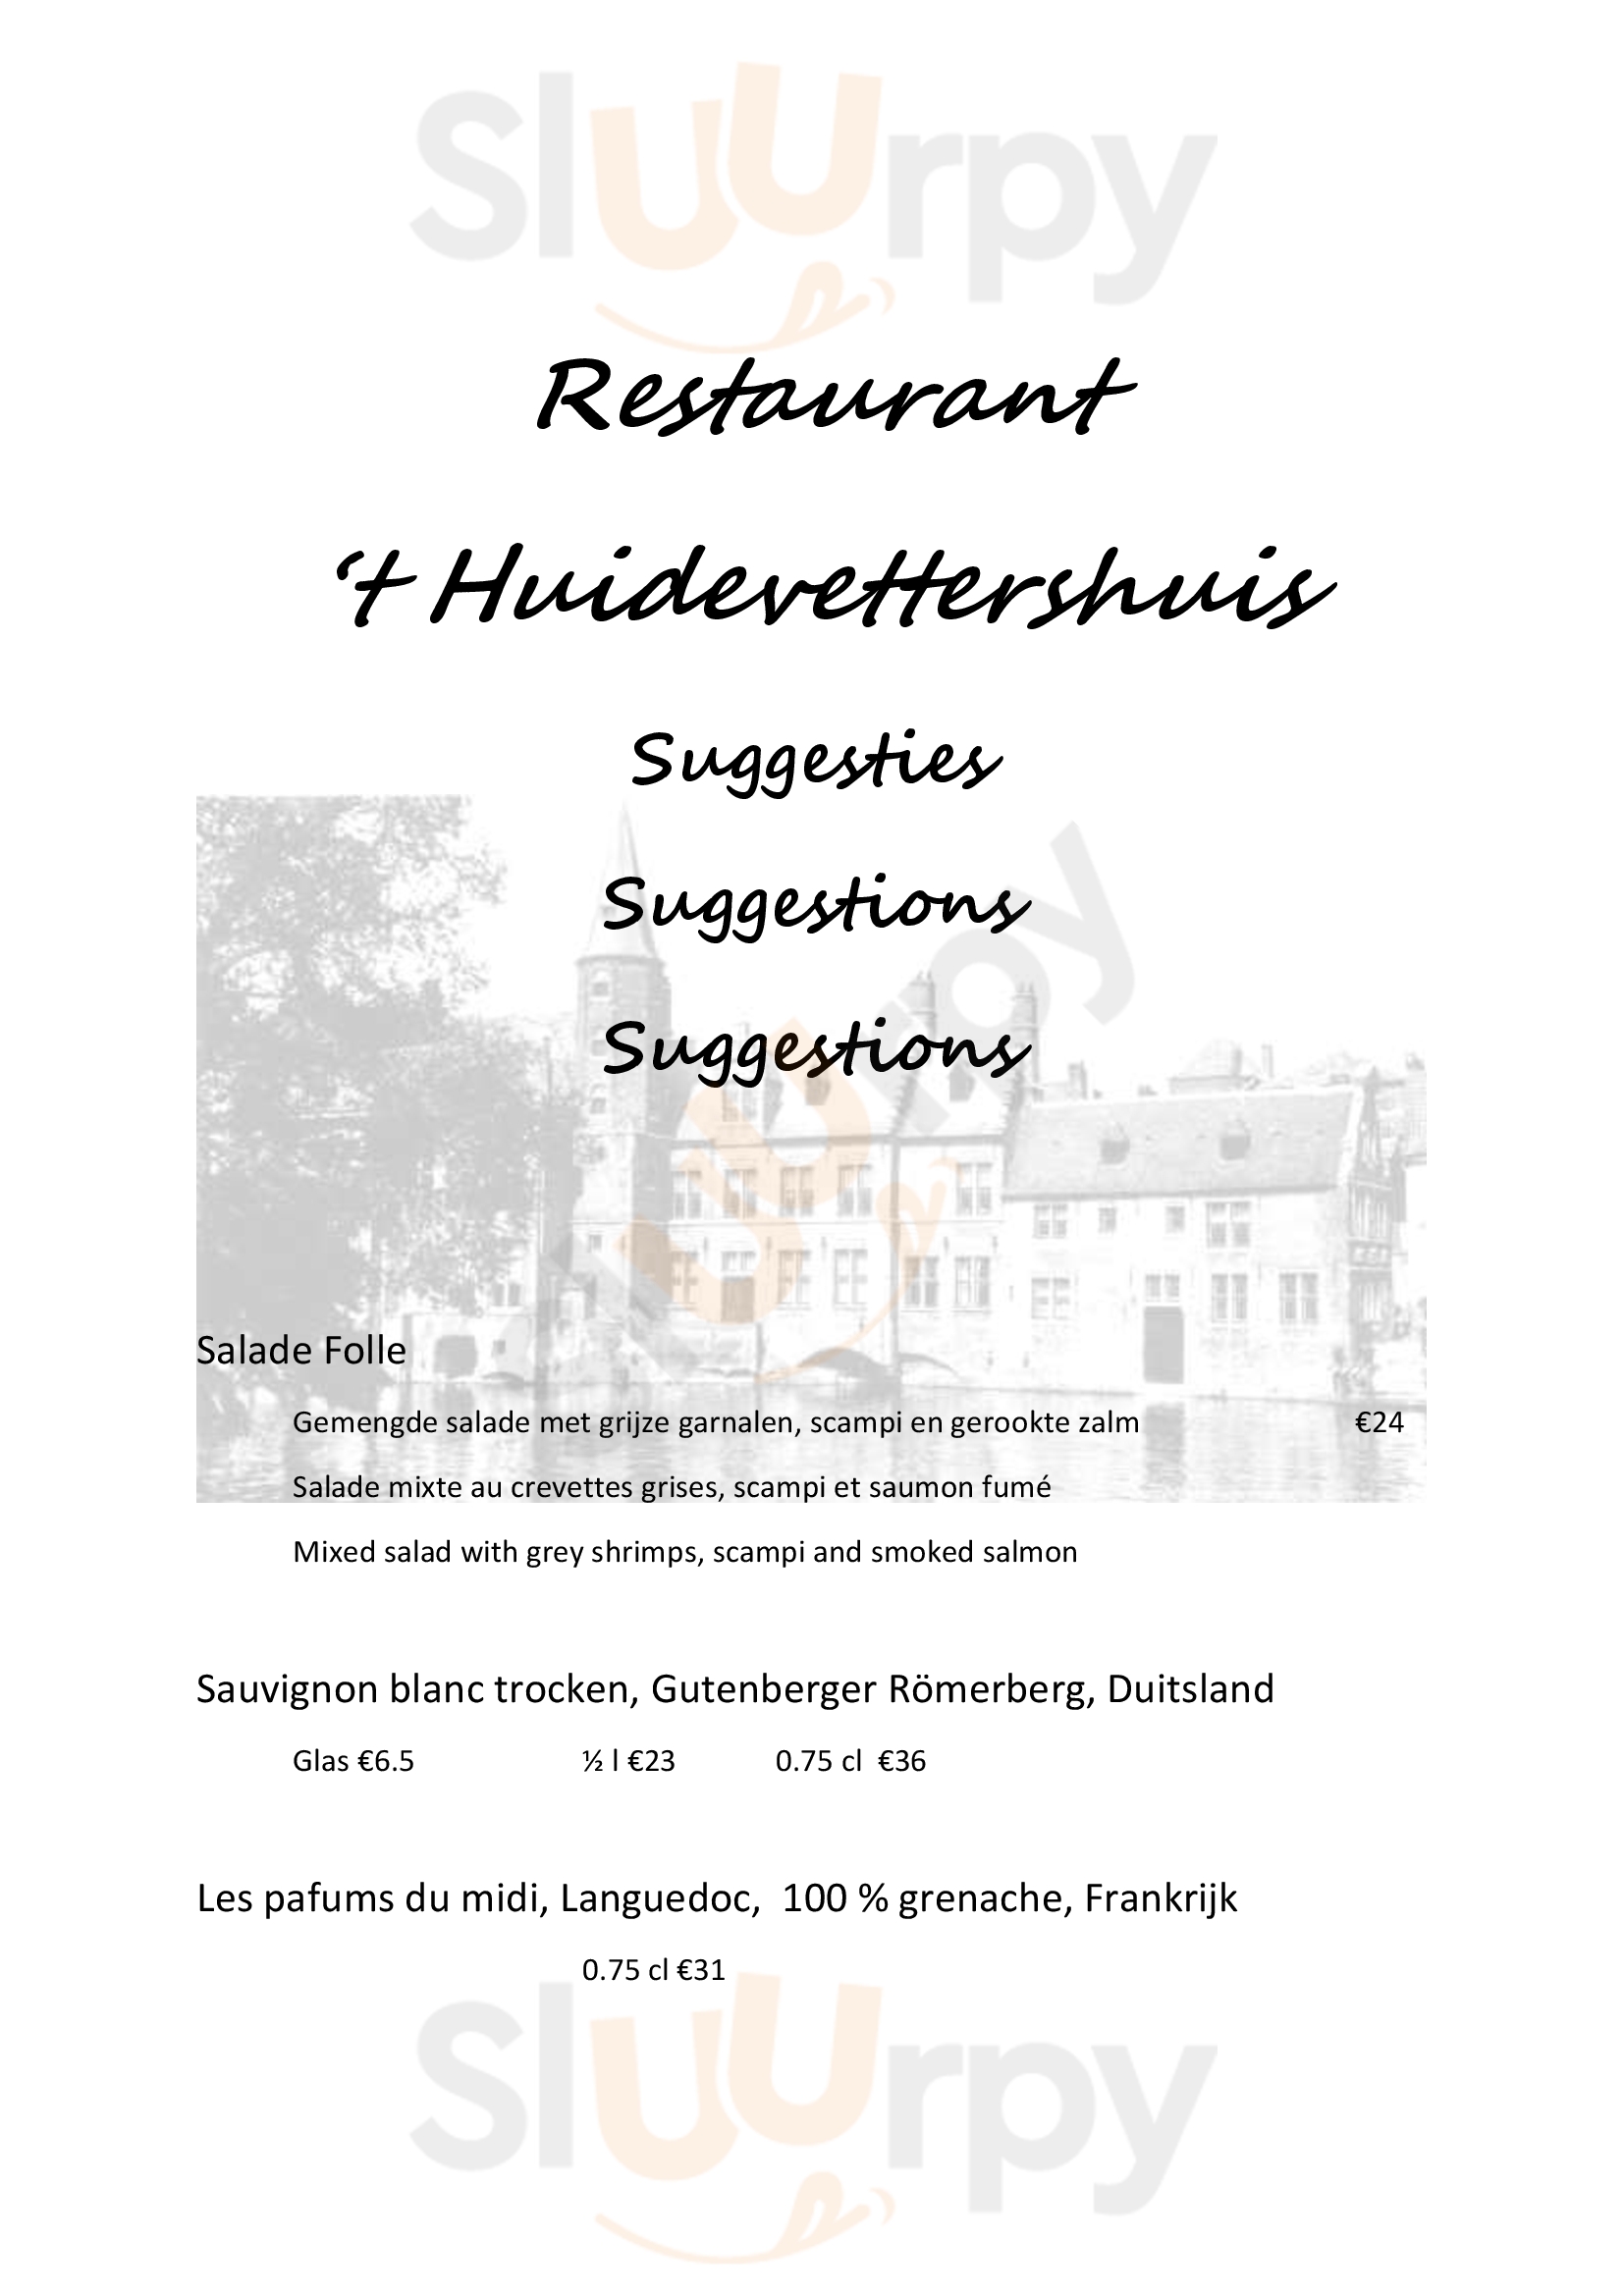 't Huidevettershuis Bruges Menu - 1